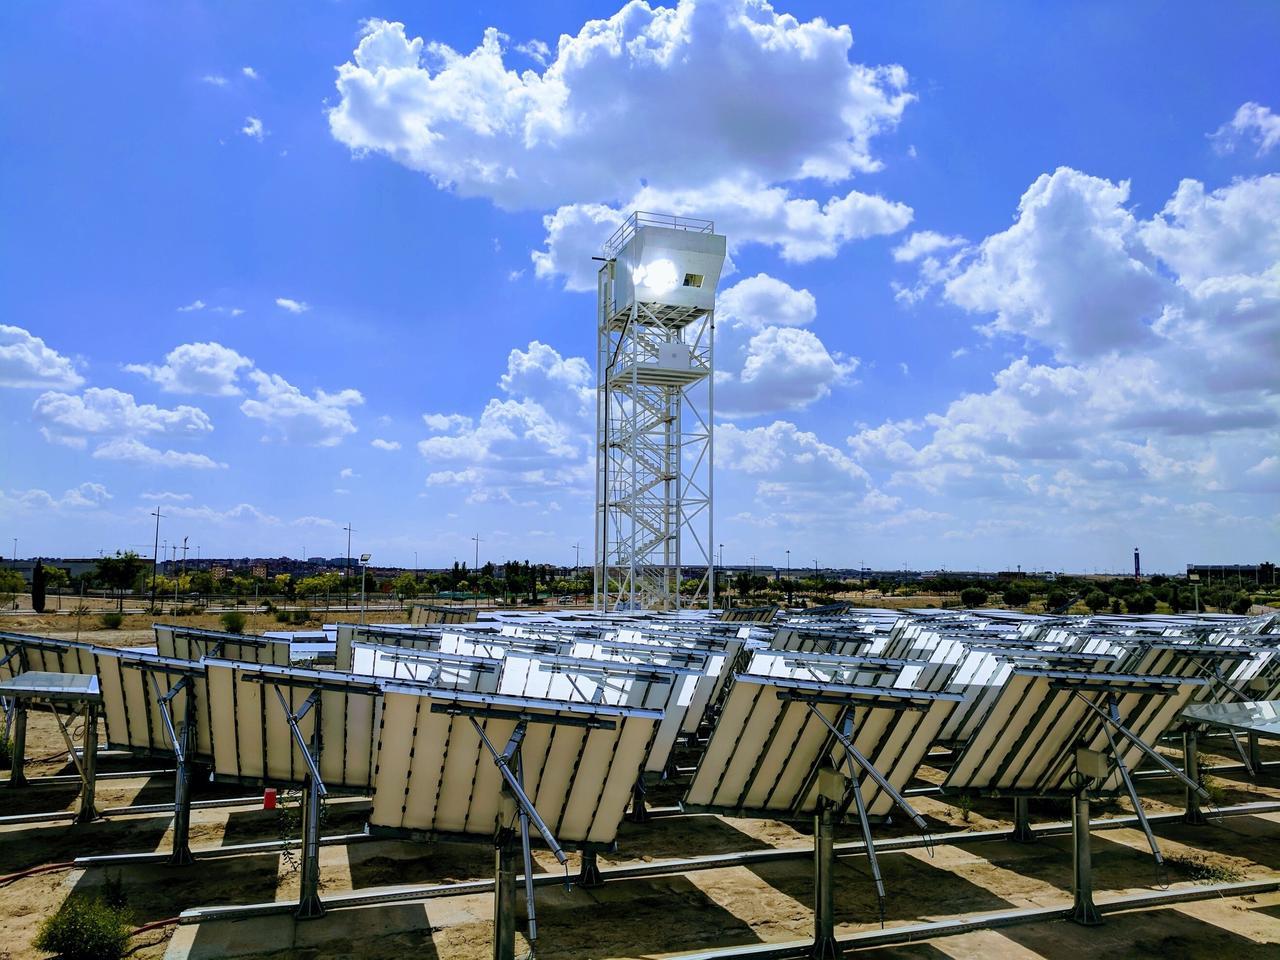 Башня на солнечной энергии производит реактивное топливо с использованием воды, углекислого газа и солнечного свет